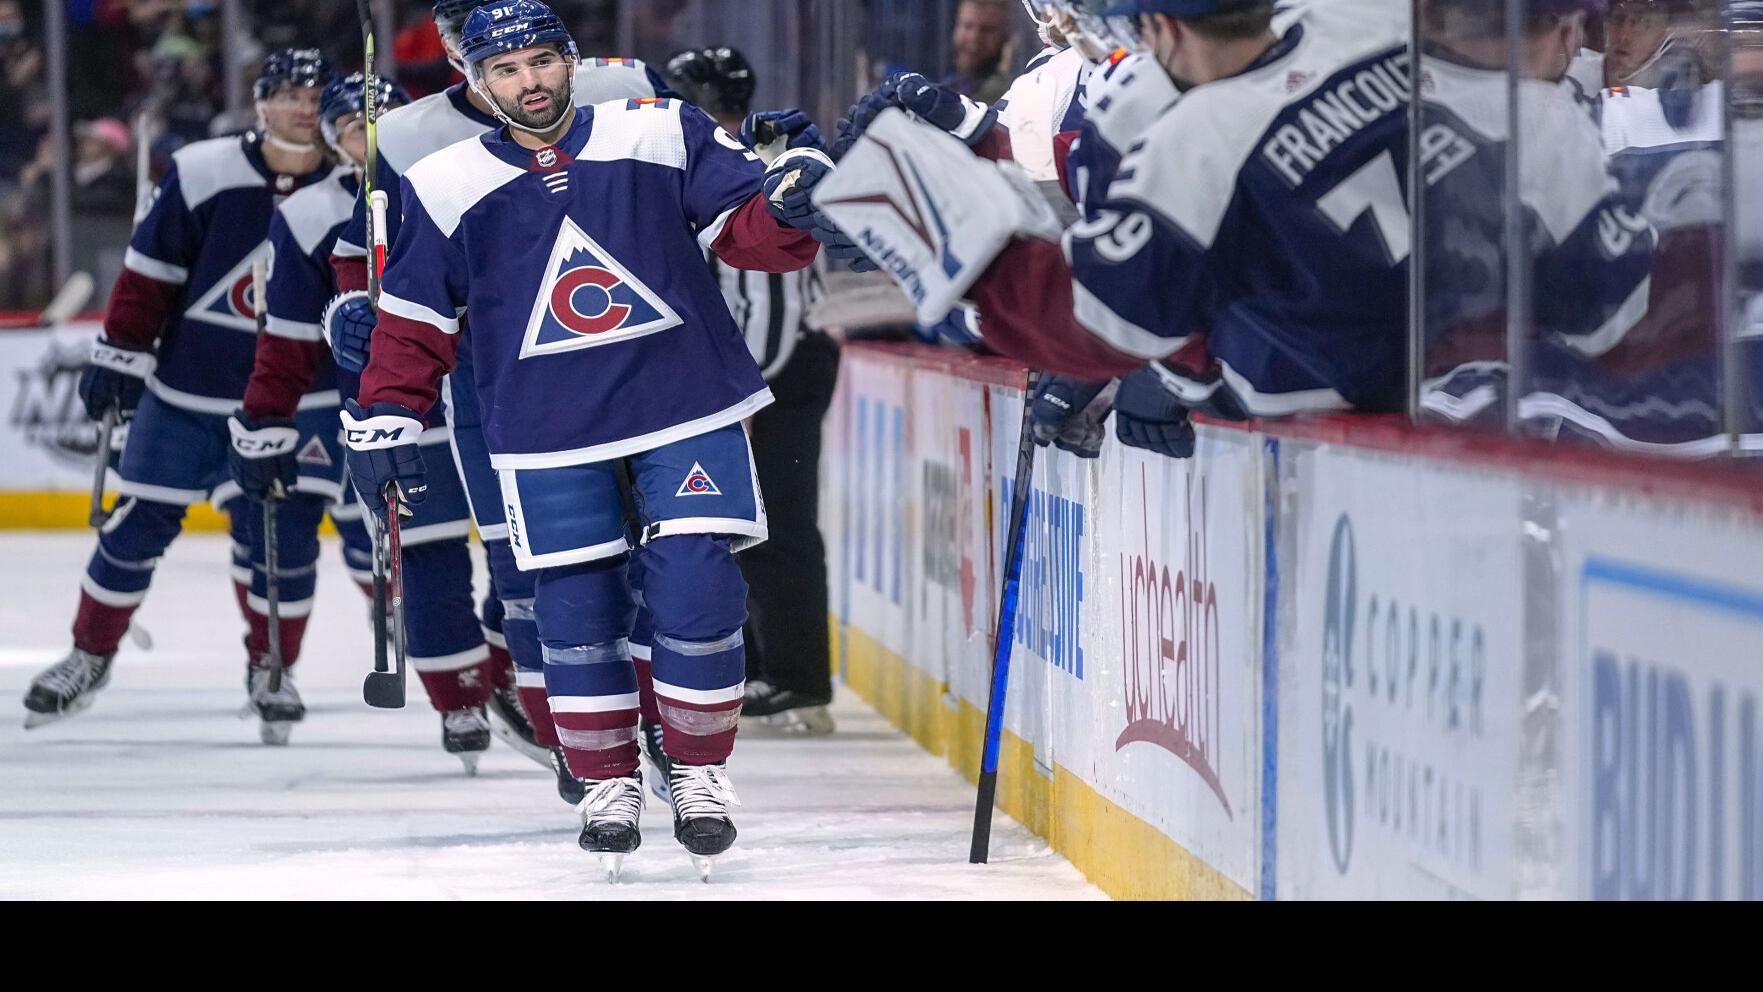 Steven Stamkos, Nazem Kadri among NHL's fan-voted Last Men In for